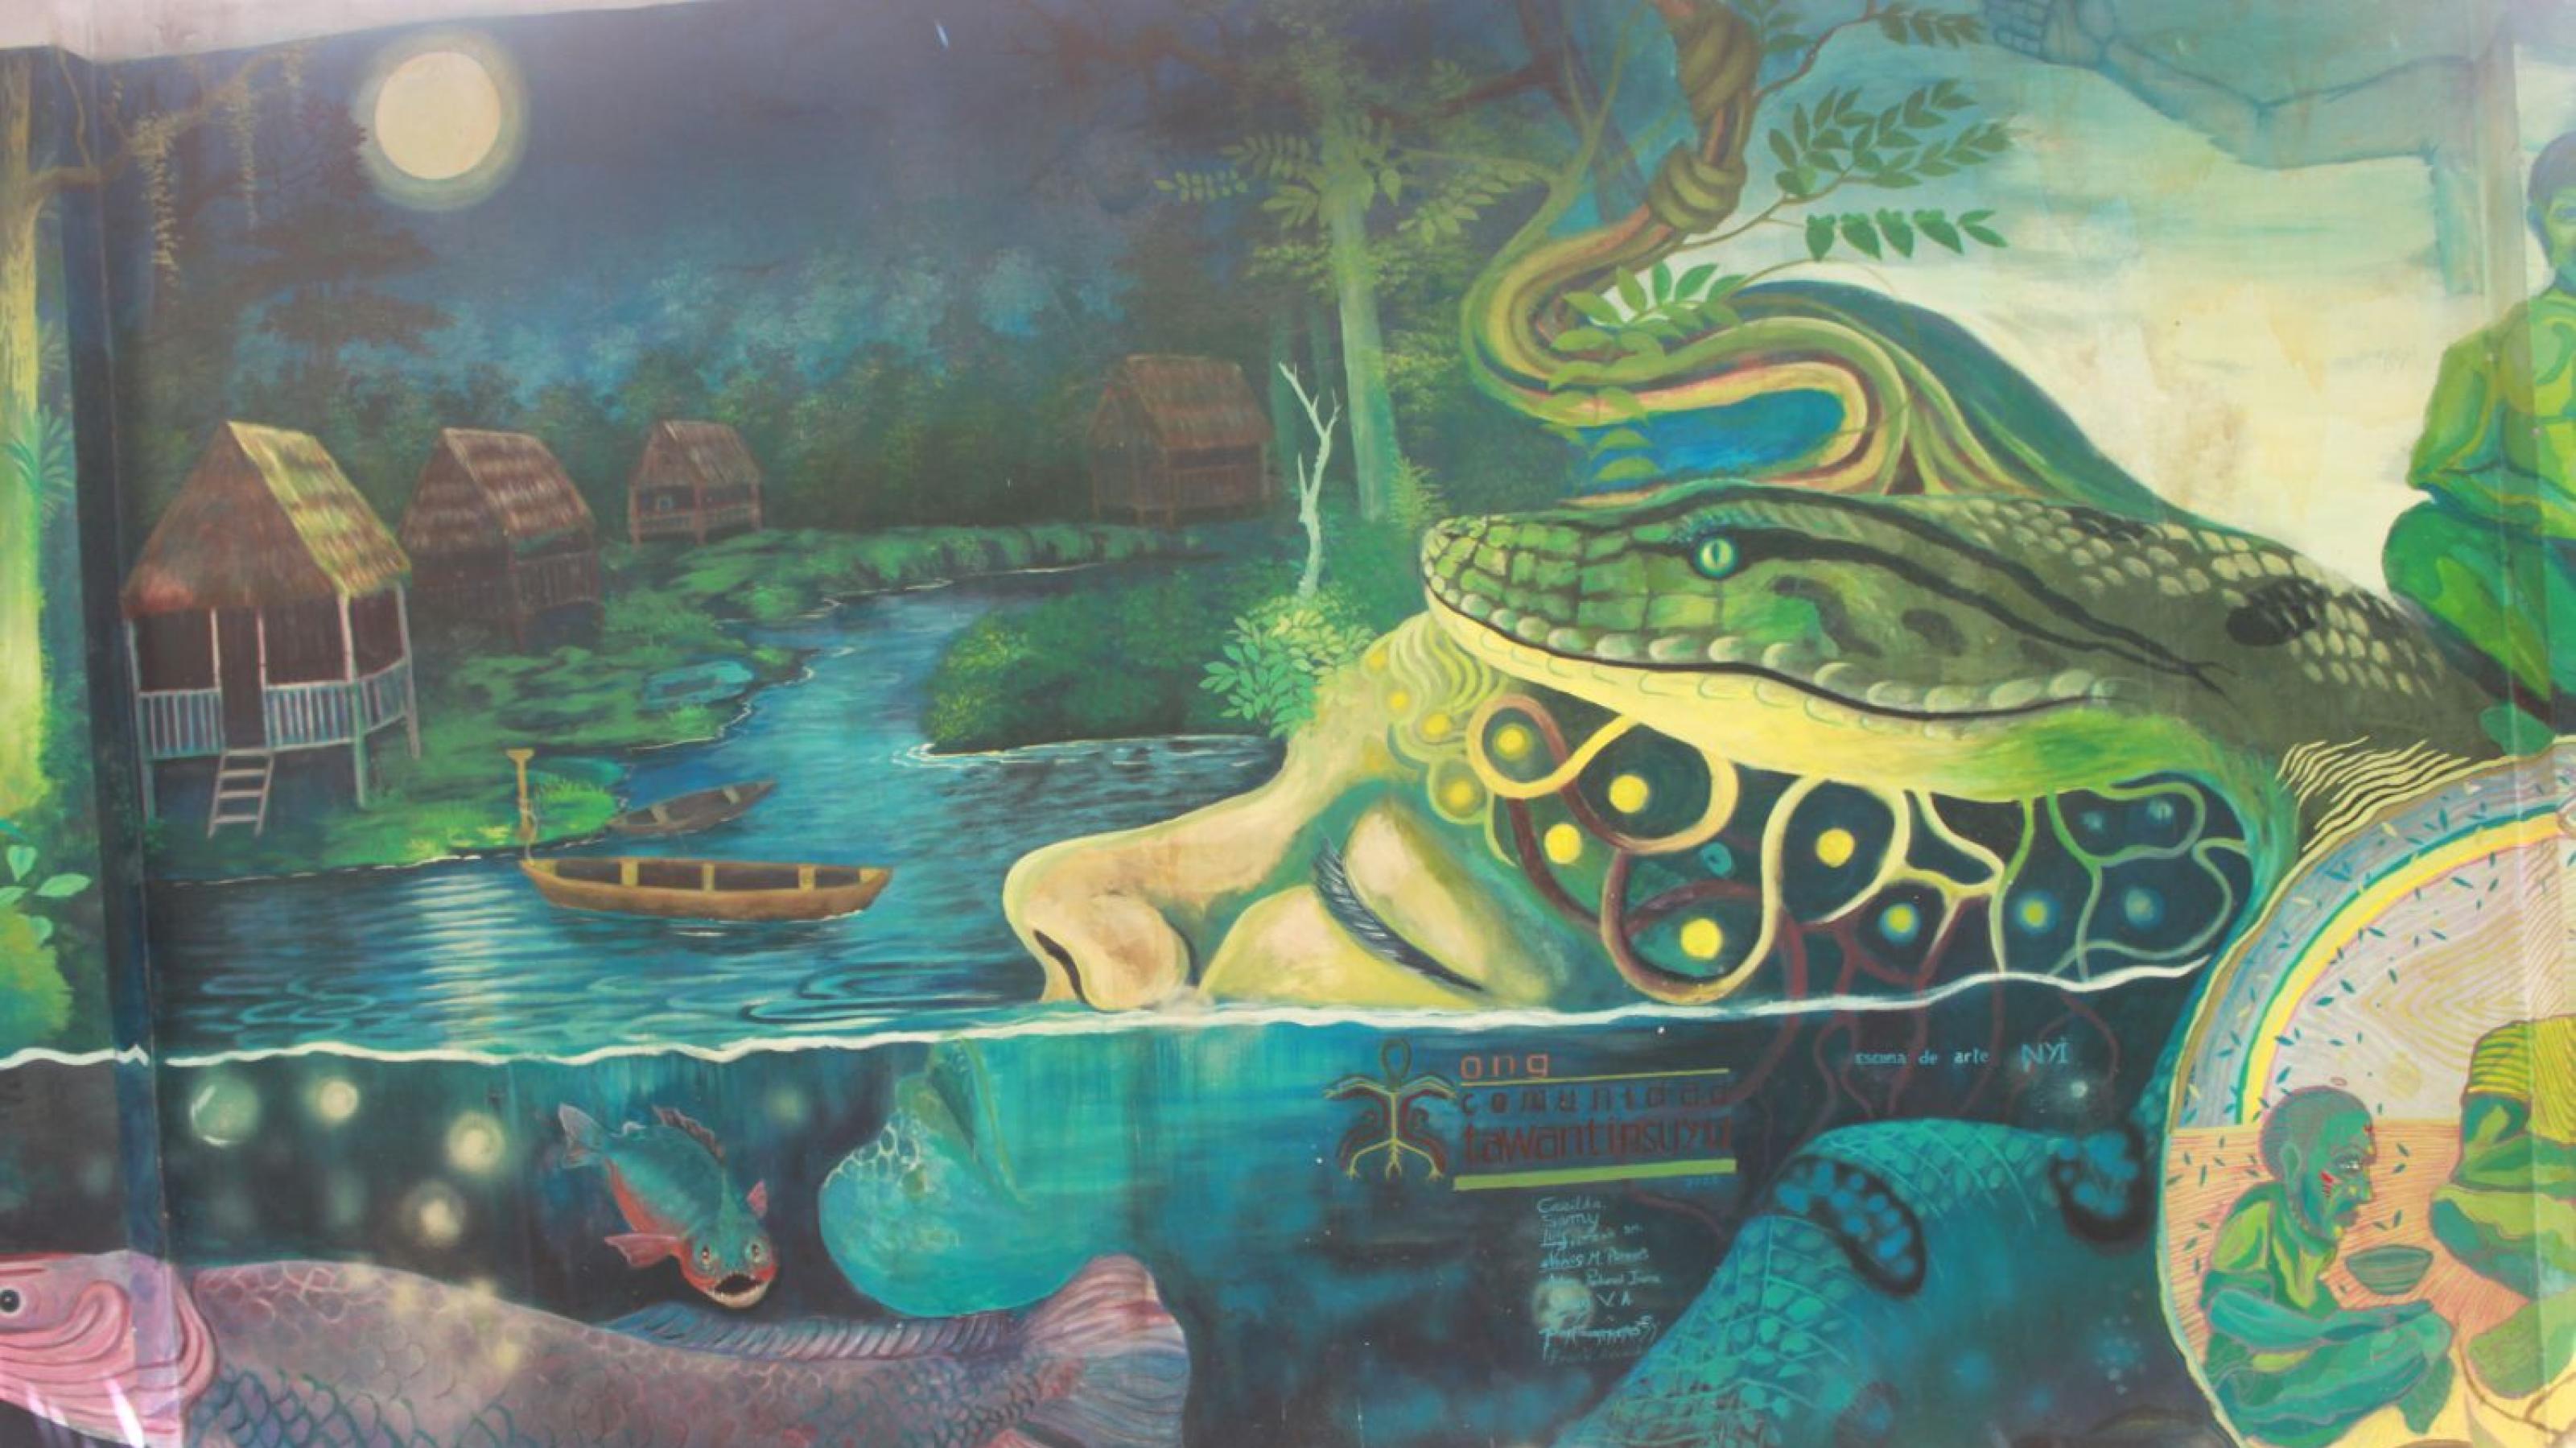 Wandgemälde, in grünen Tönen. Zeigt den Kopf einer liegnden, schlafenden Frau im Wasser. Um ihren Kopf herum windet sich eine grosse Schlange. Weitere Fische schwimmen im Wasser.